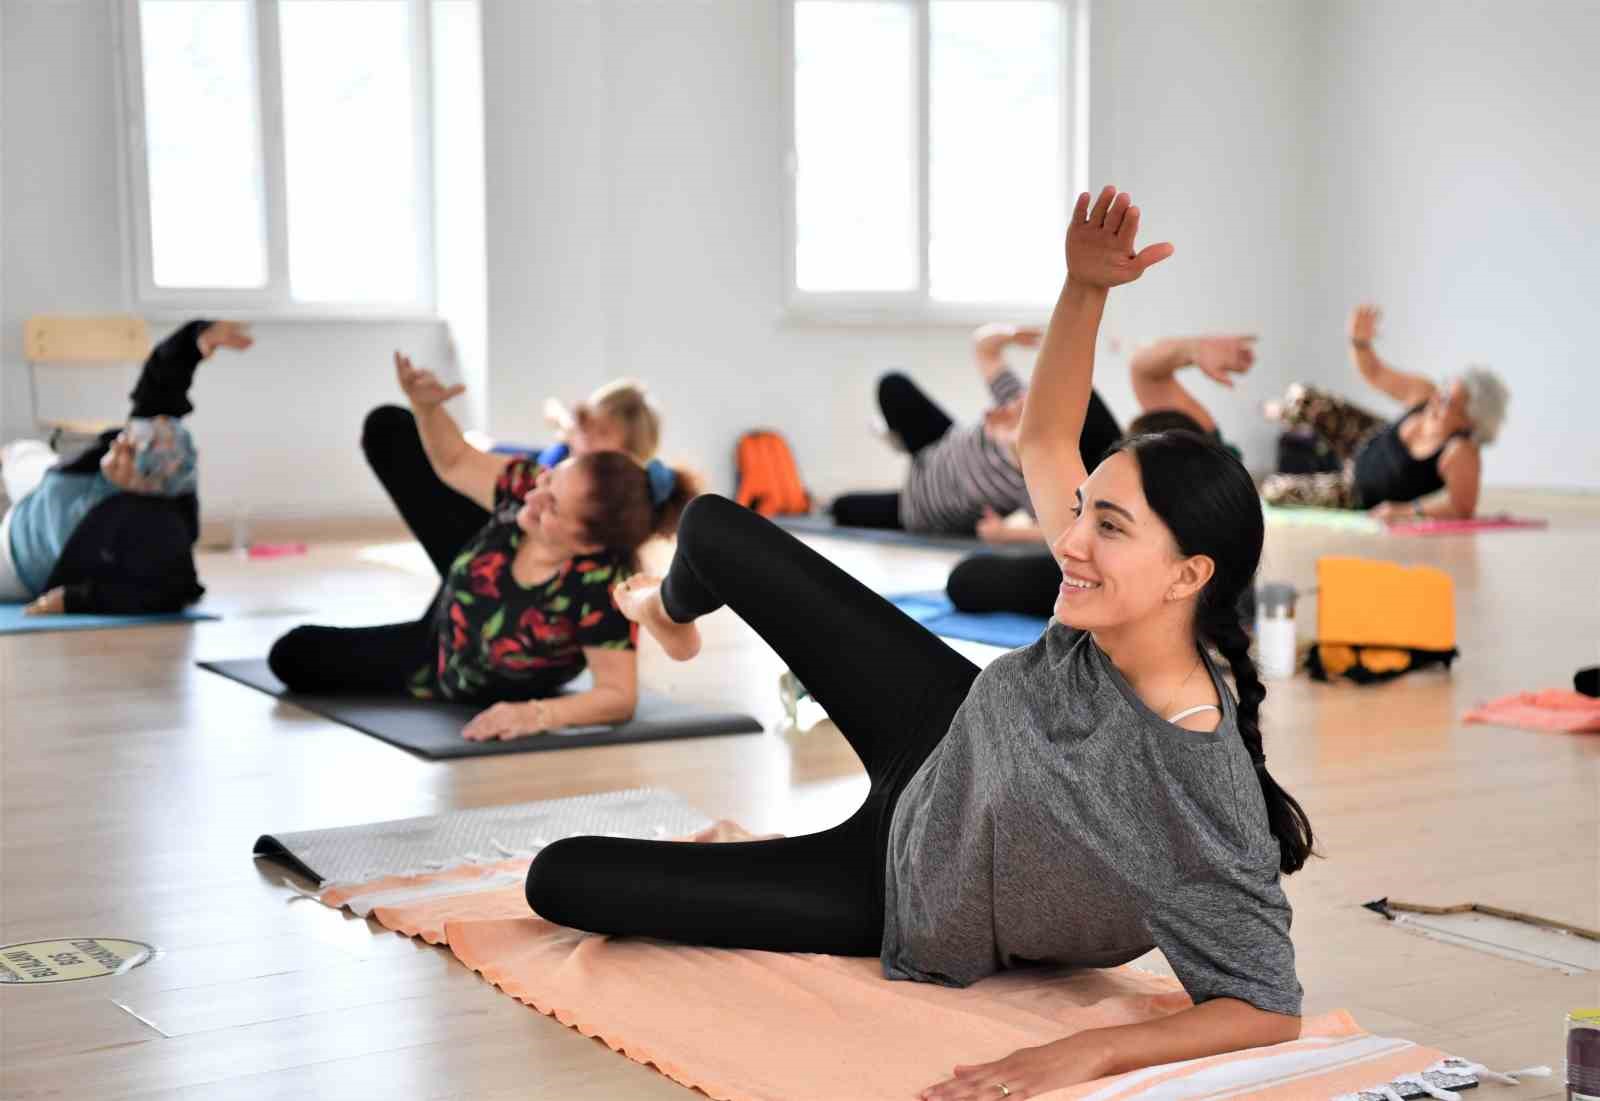 Antalya’da Sağlıklı Yaşam Trendi: Pilates, Yoga ve Zumba’ya Büyük İlgi